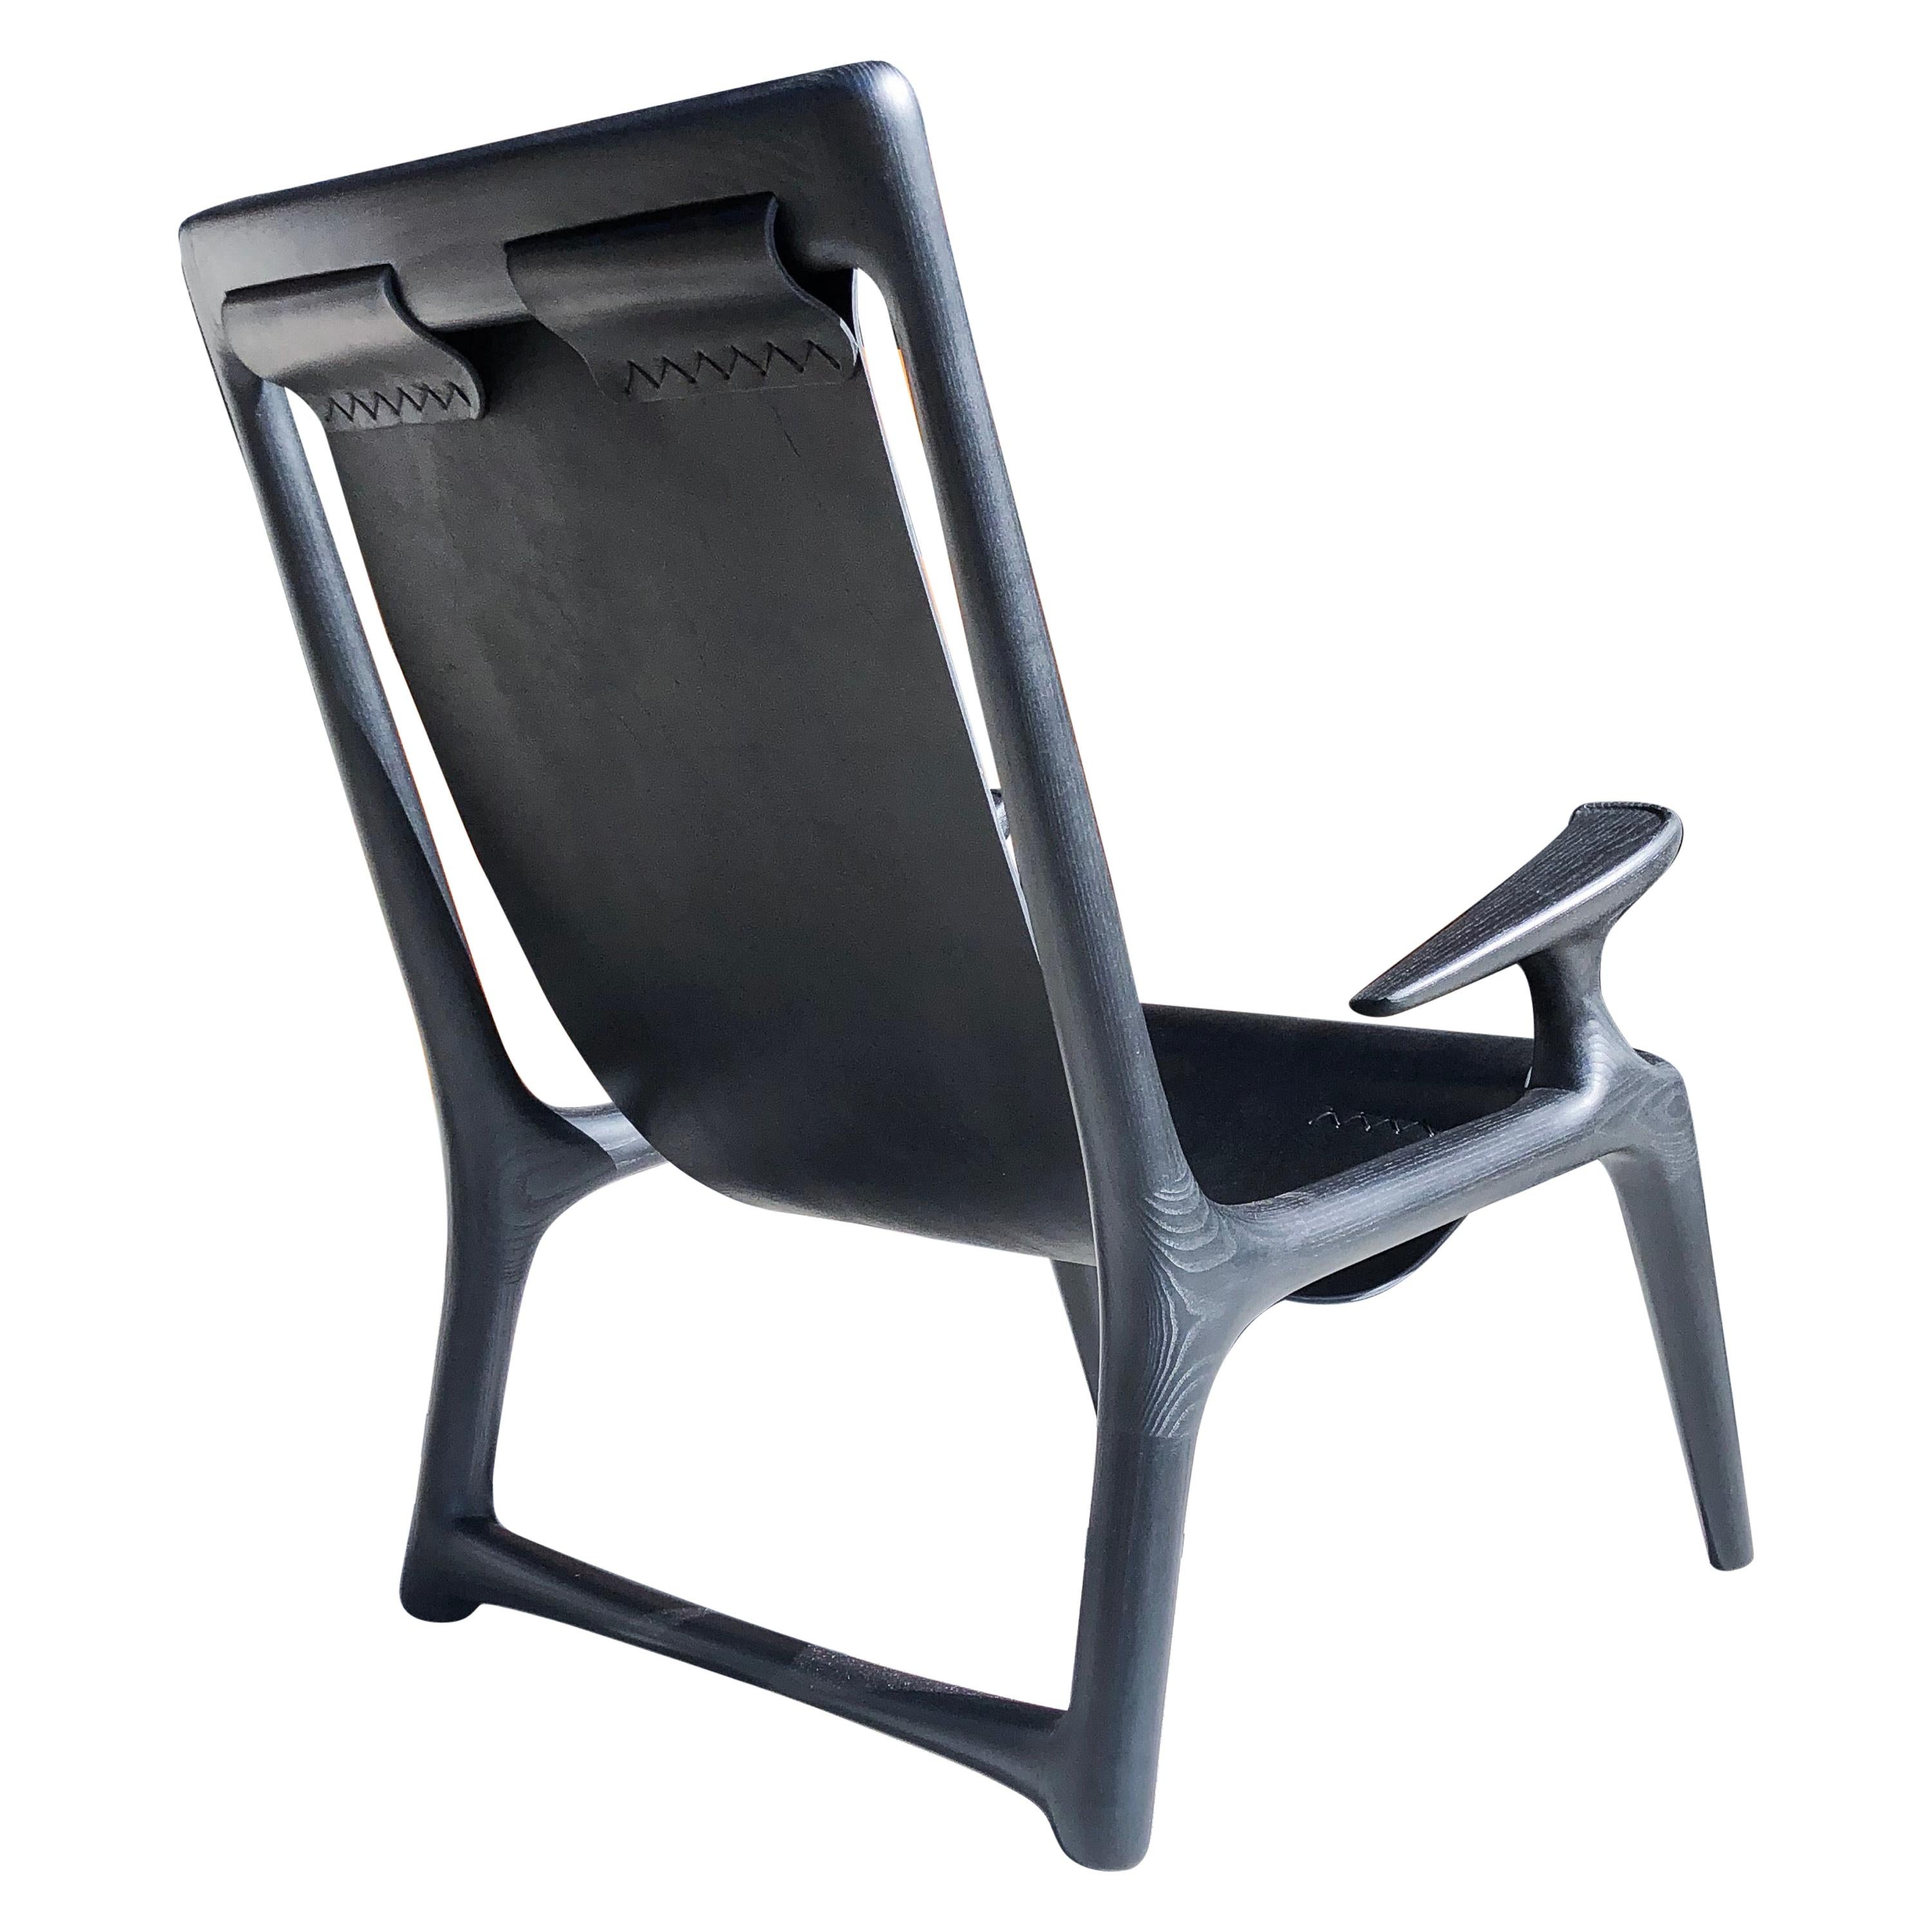 Handgefertigter Sessel aus anthrazitfarbenem Eschenholz, entworfen von Fernweh Woodworking